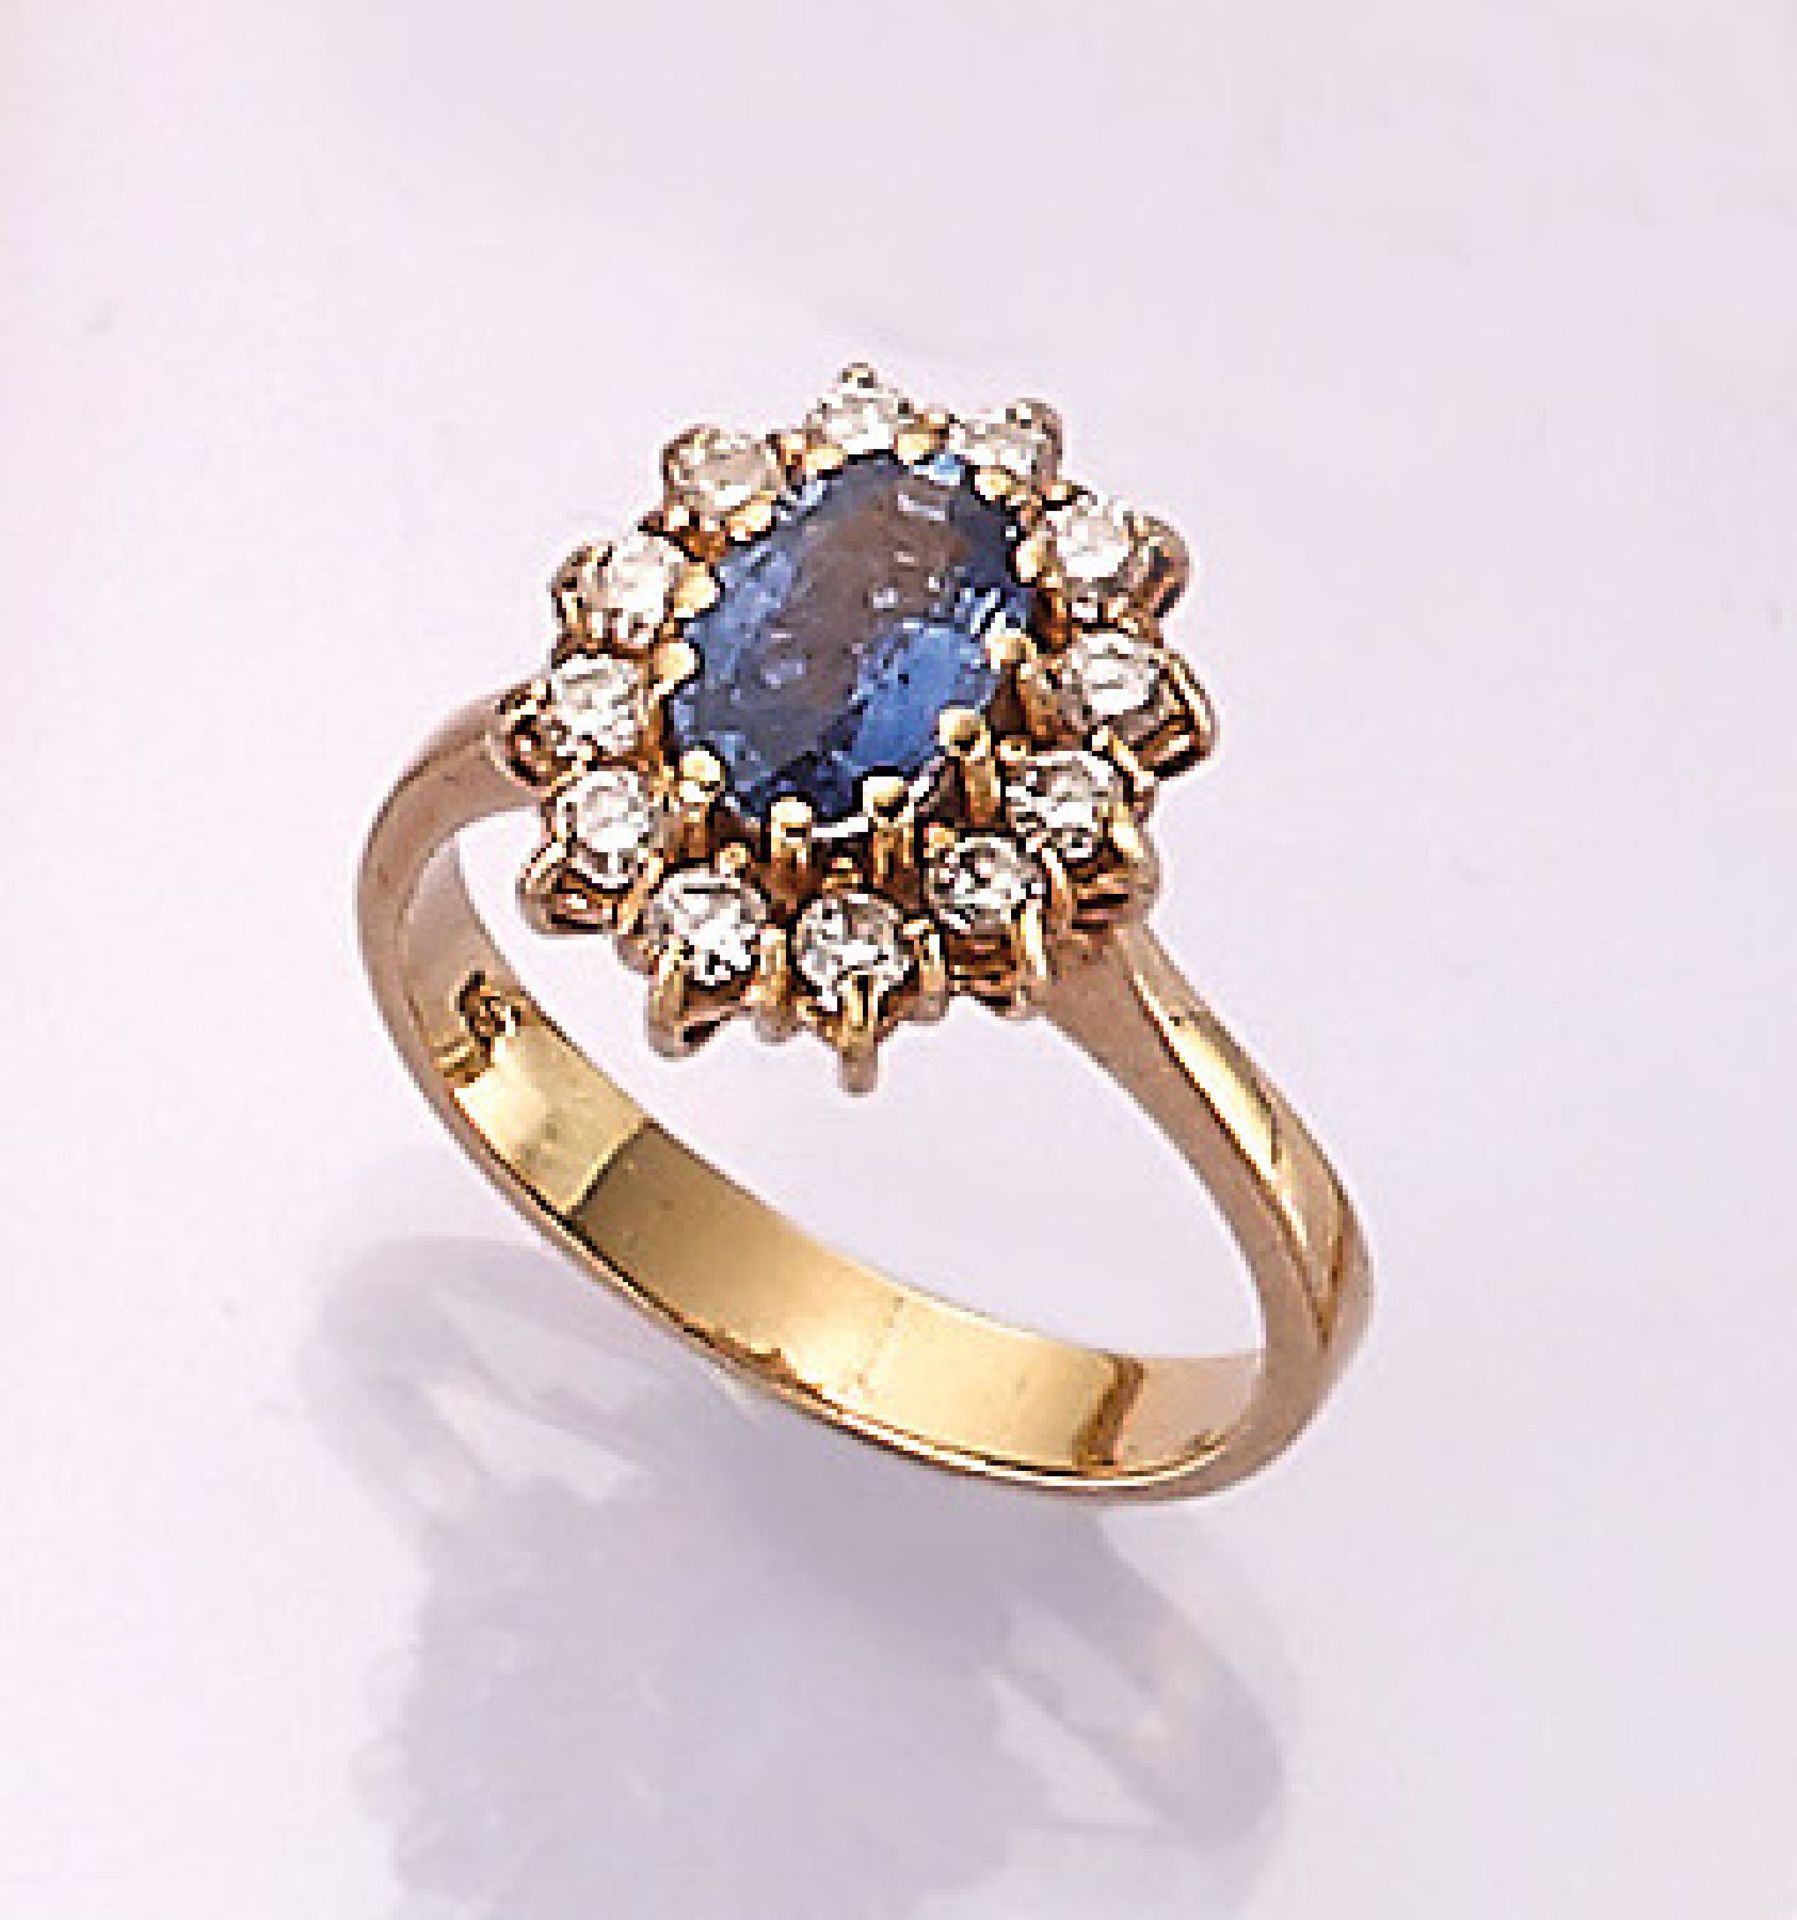 18 kt Gold Ring mit Saphir und Brillanten, GG 750/000, mittig oval facett. Saphir ca. 1 ct,